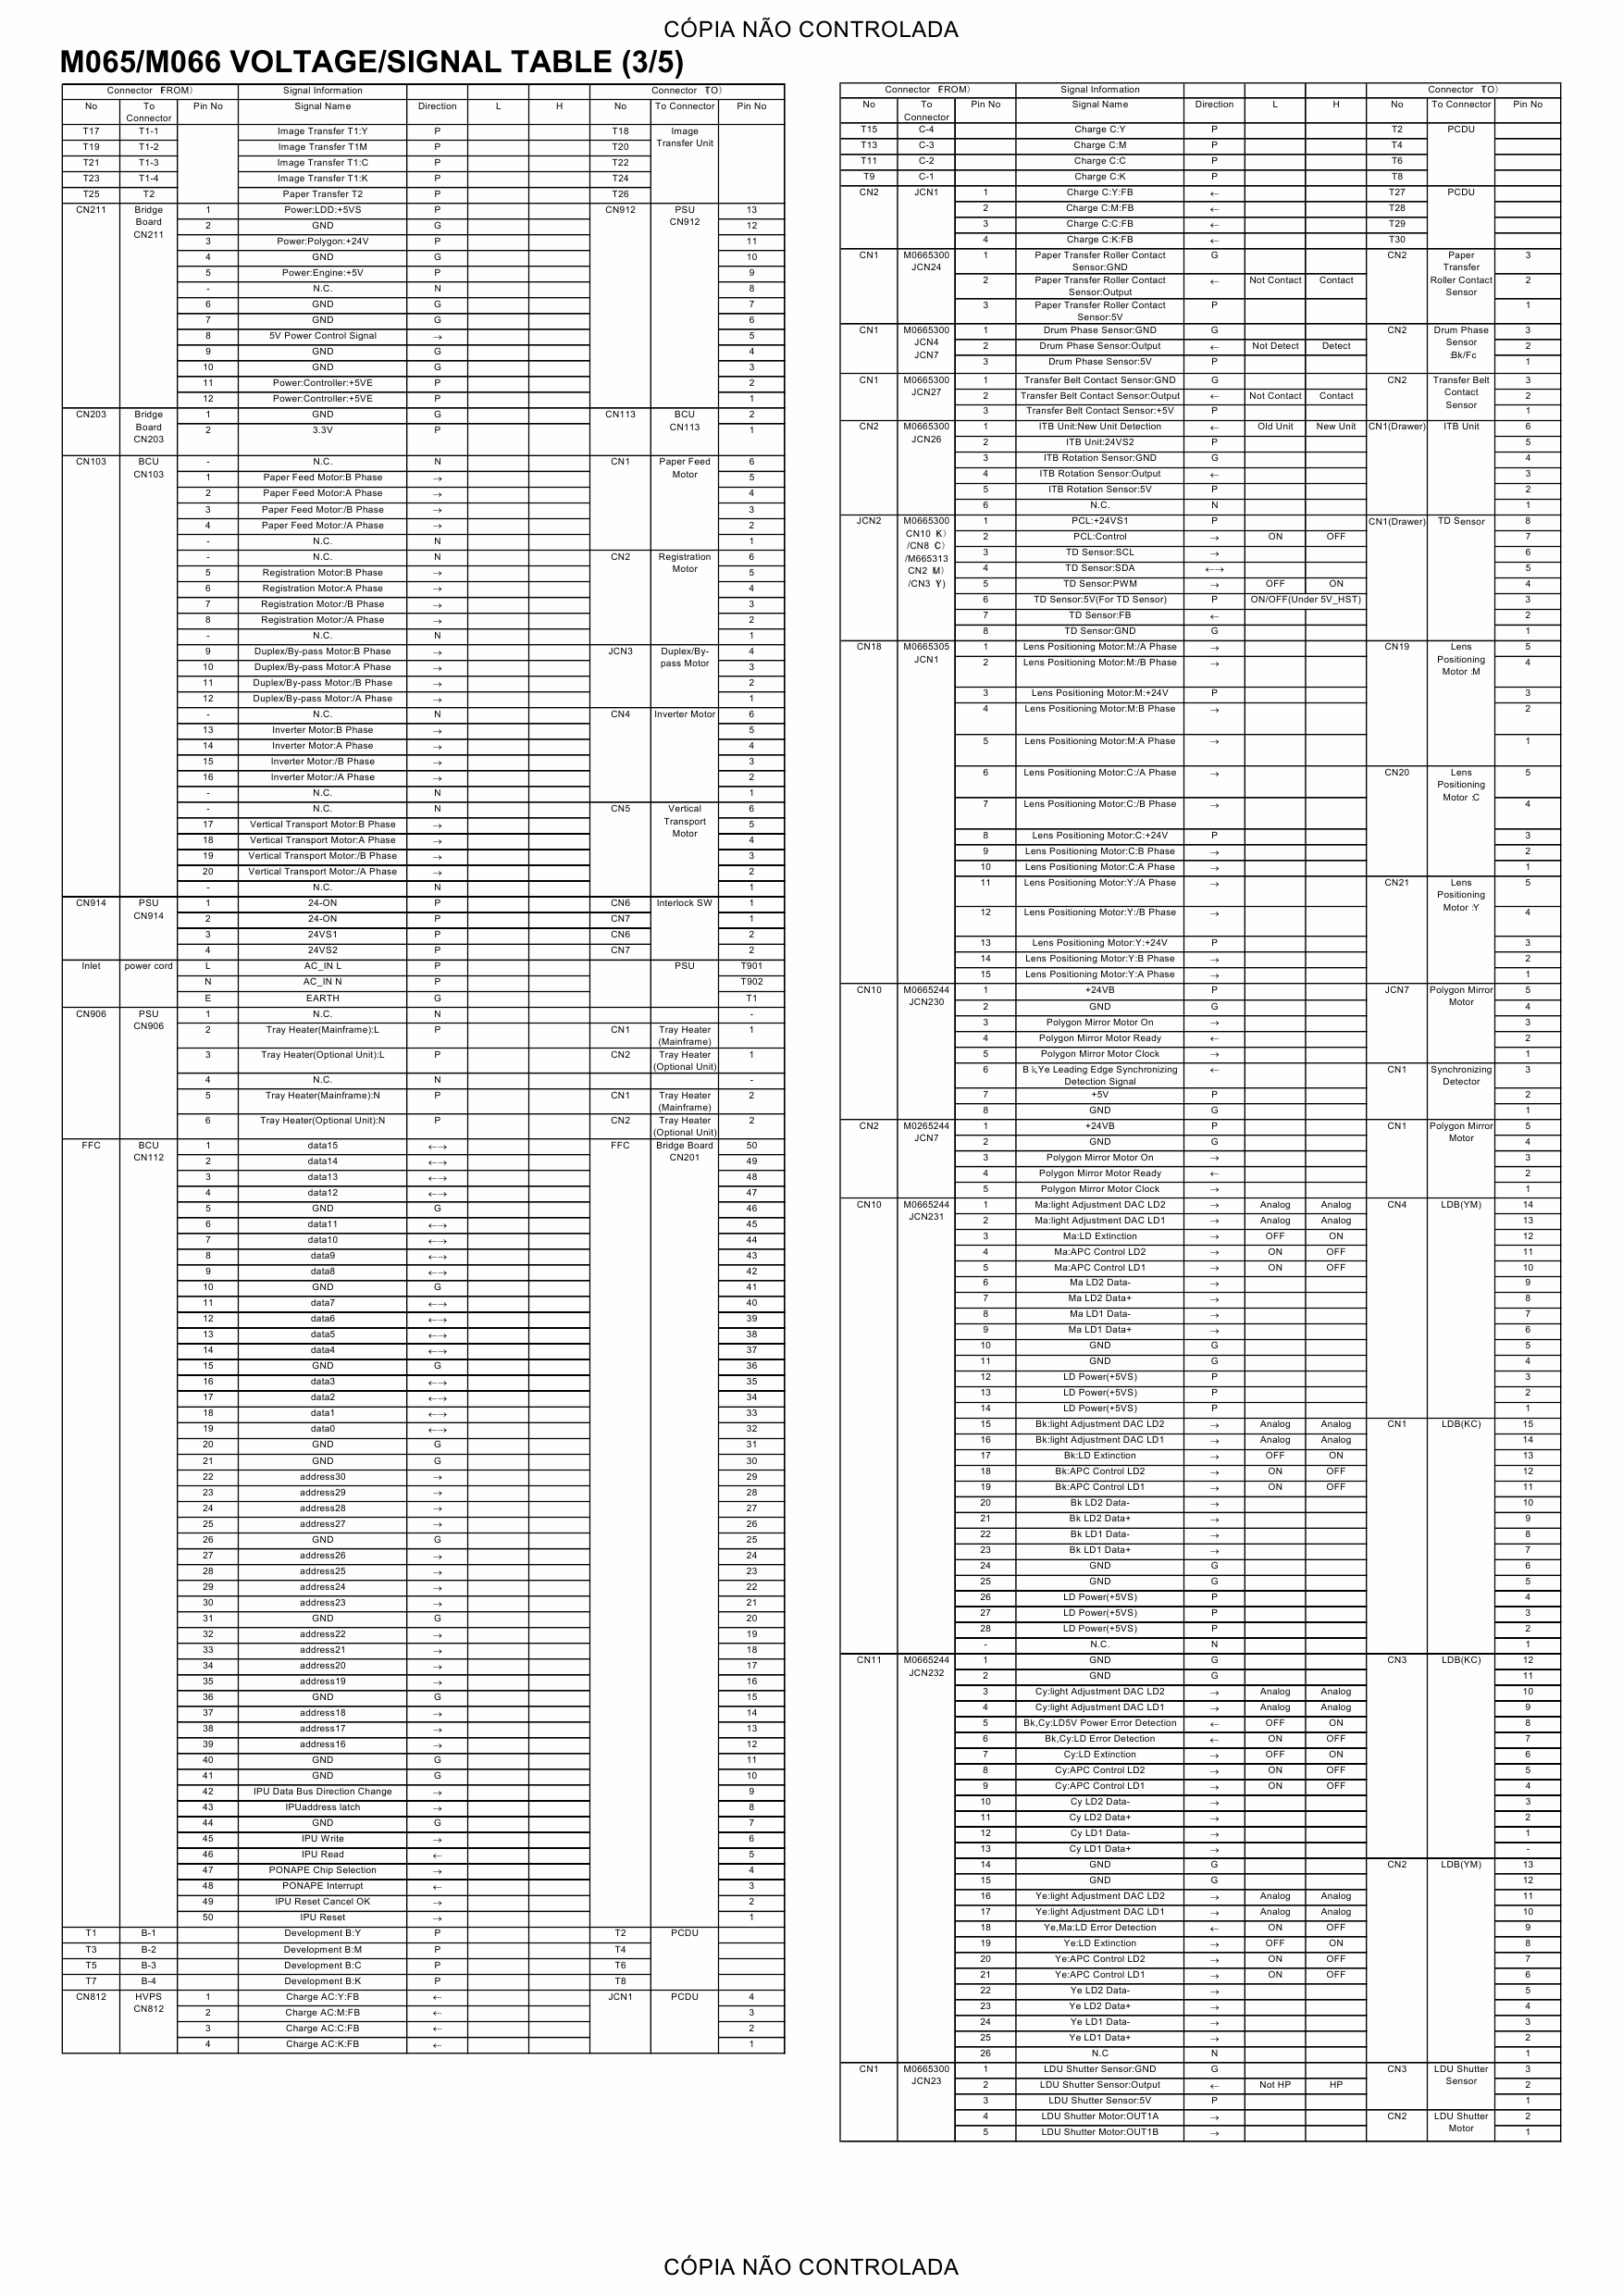 RICOH Aficio SP-C430DN C431DN M065 M066 Circuit Diagram-5